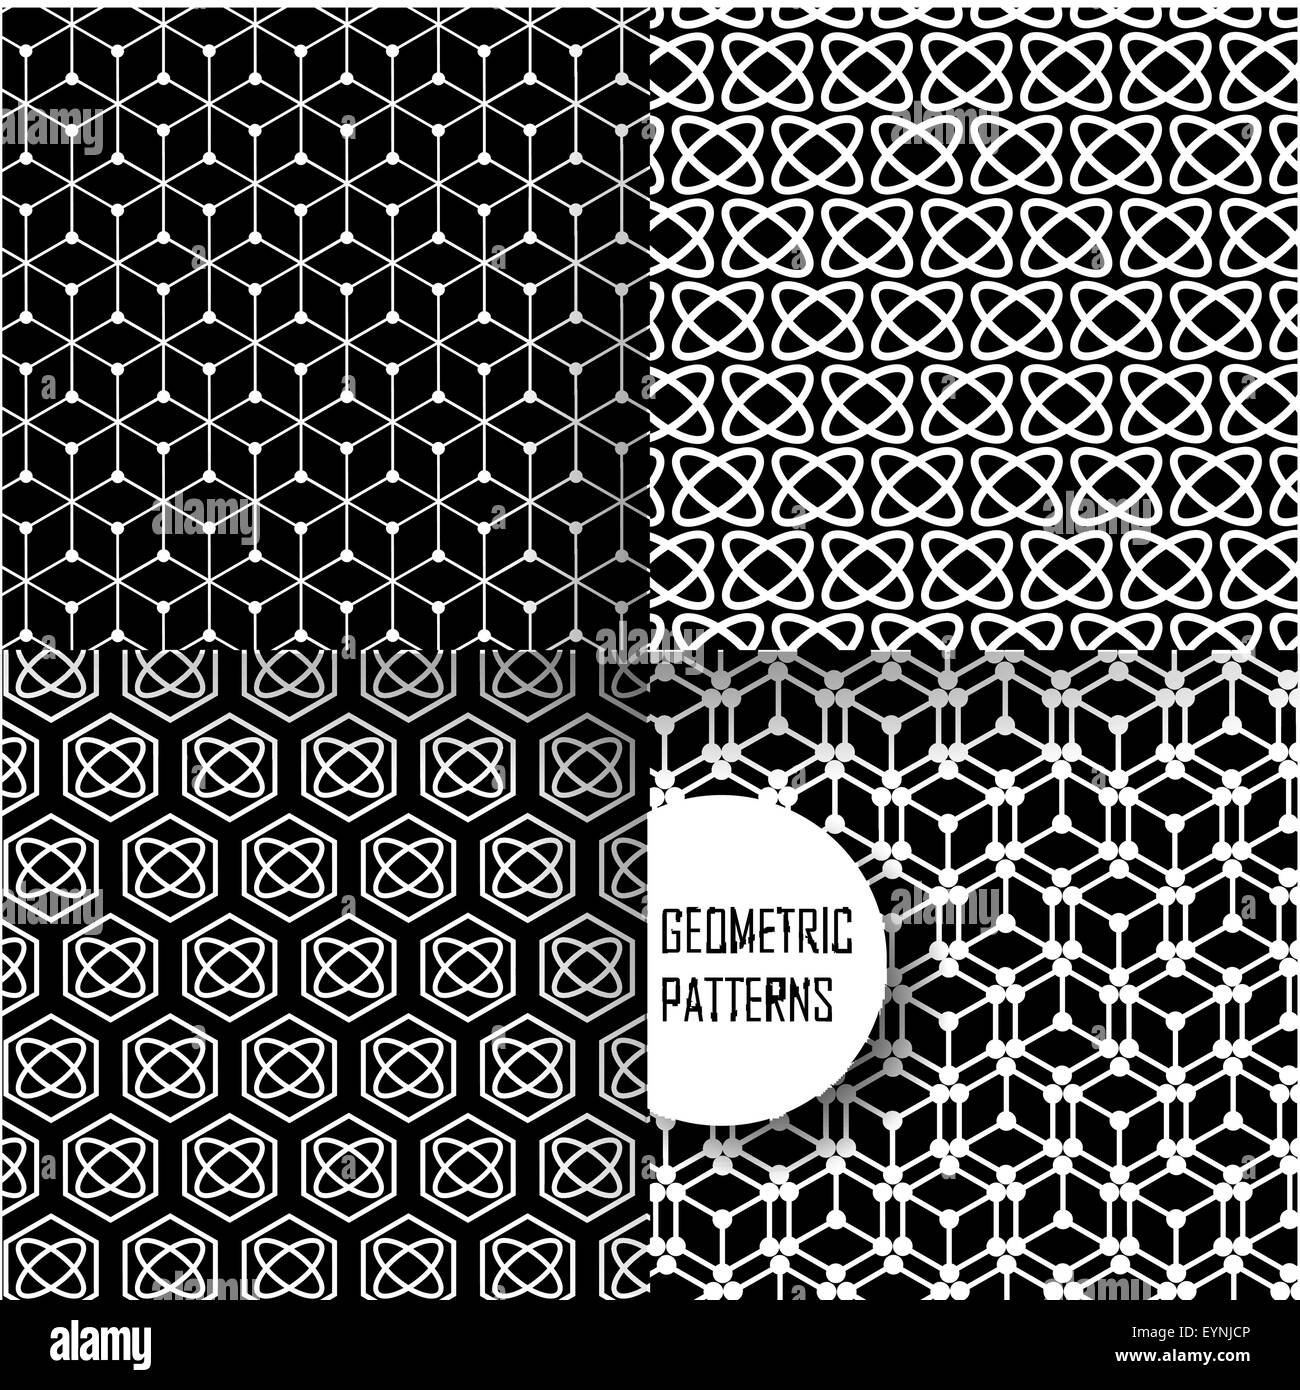 Geometric Pattern In Op Art Design Black And White Art EYNJCP 